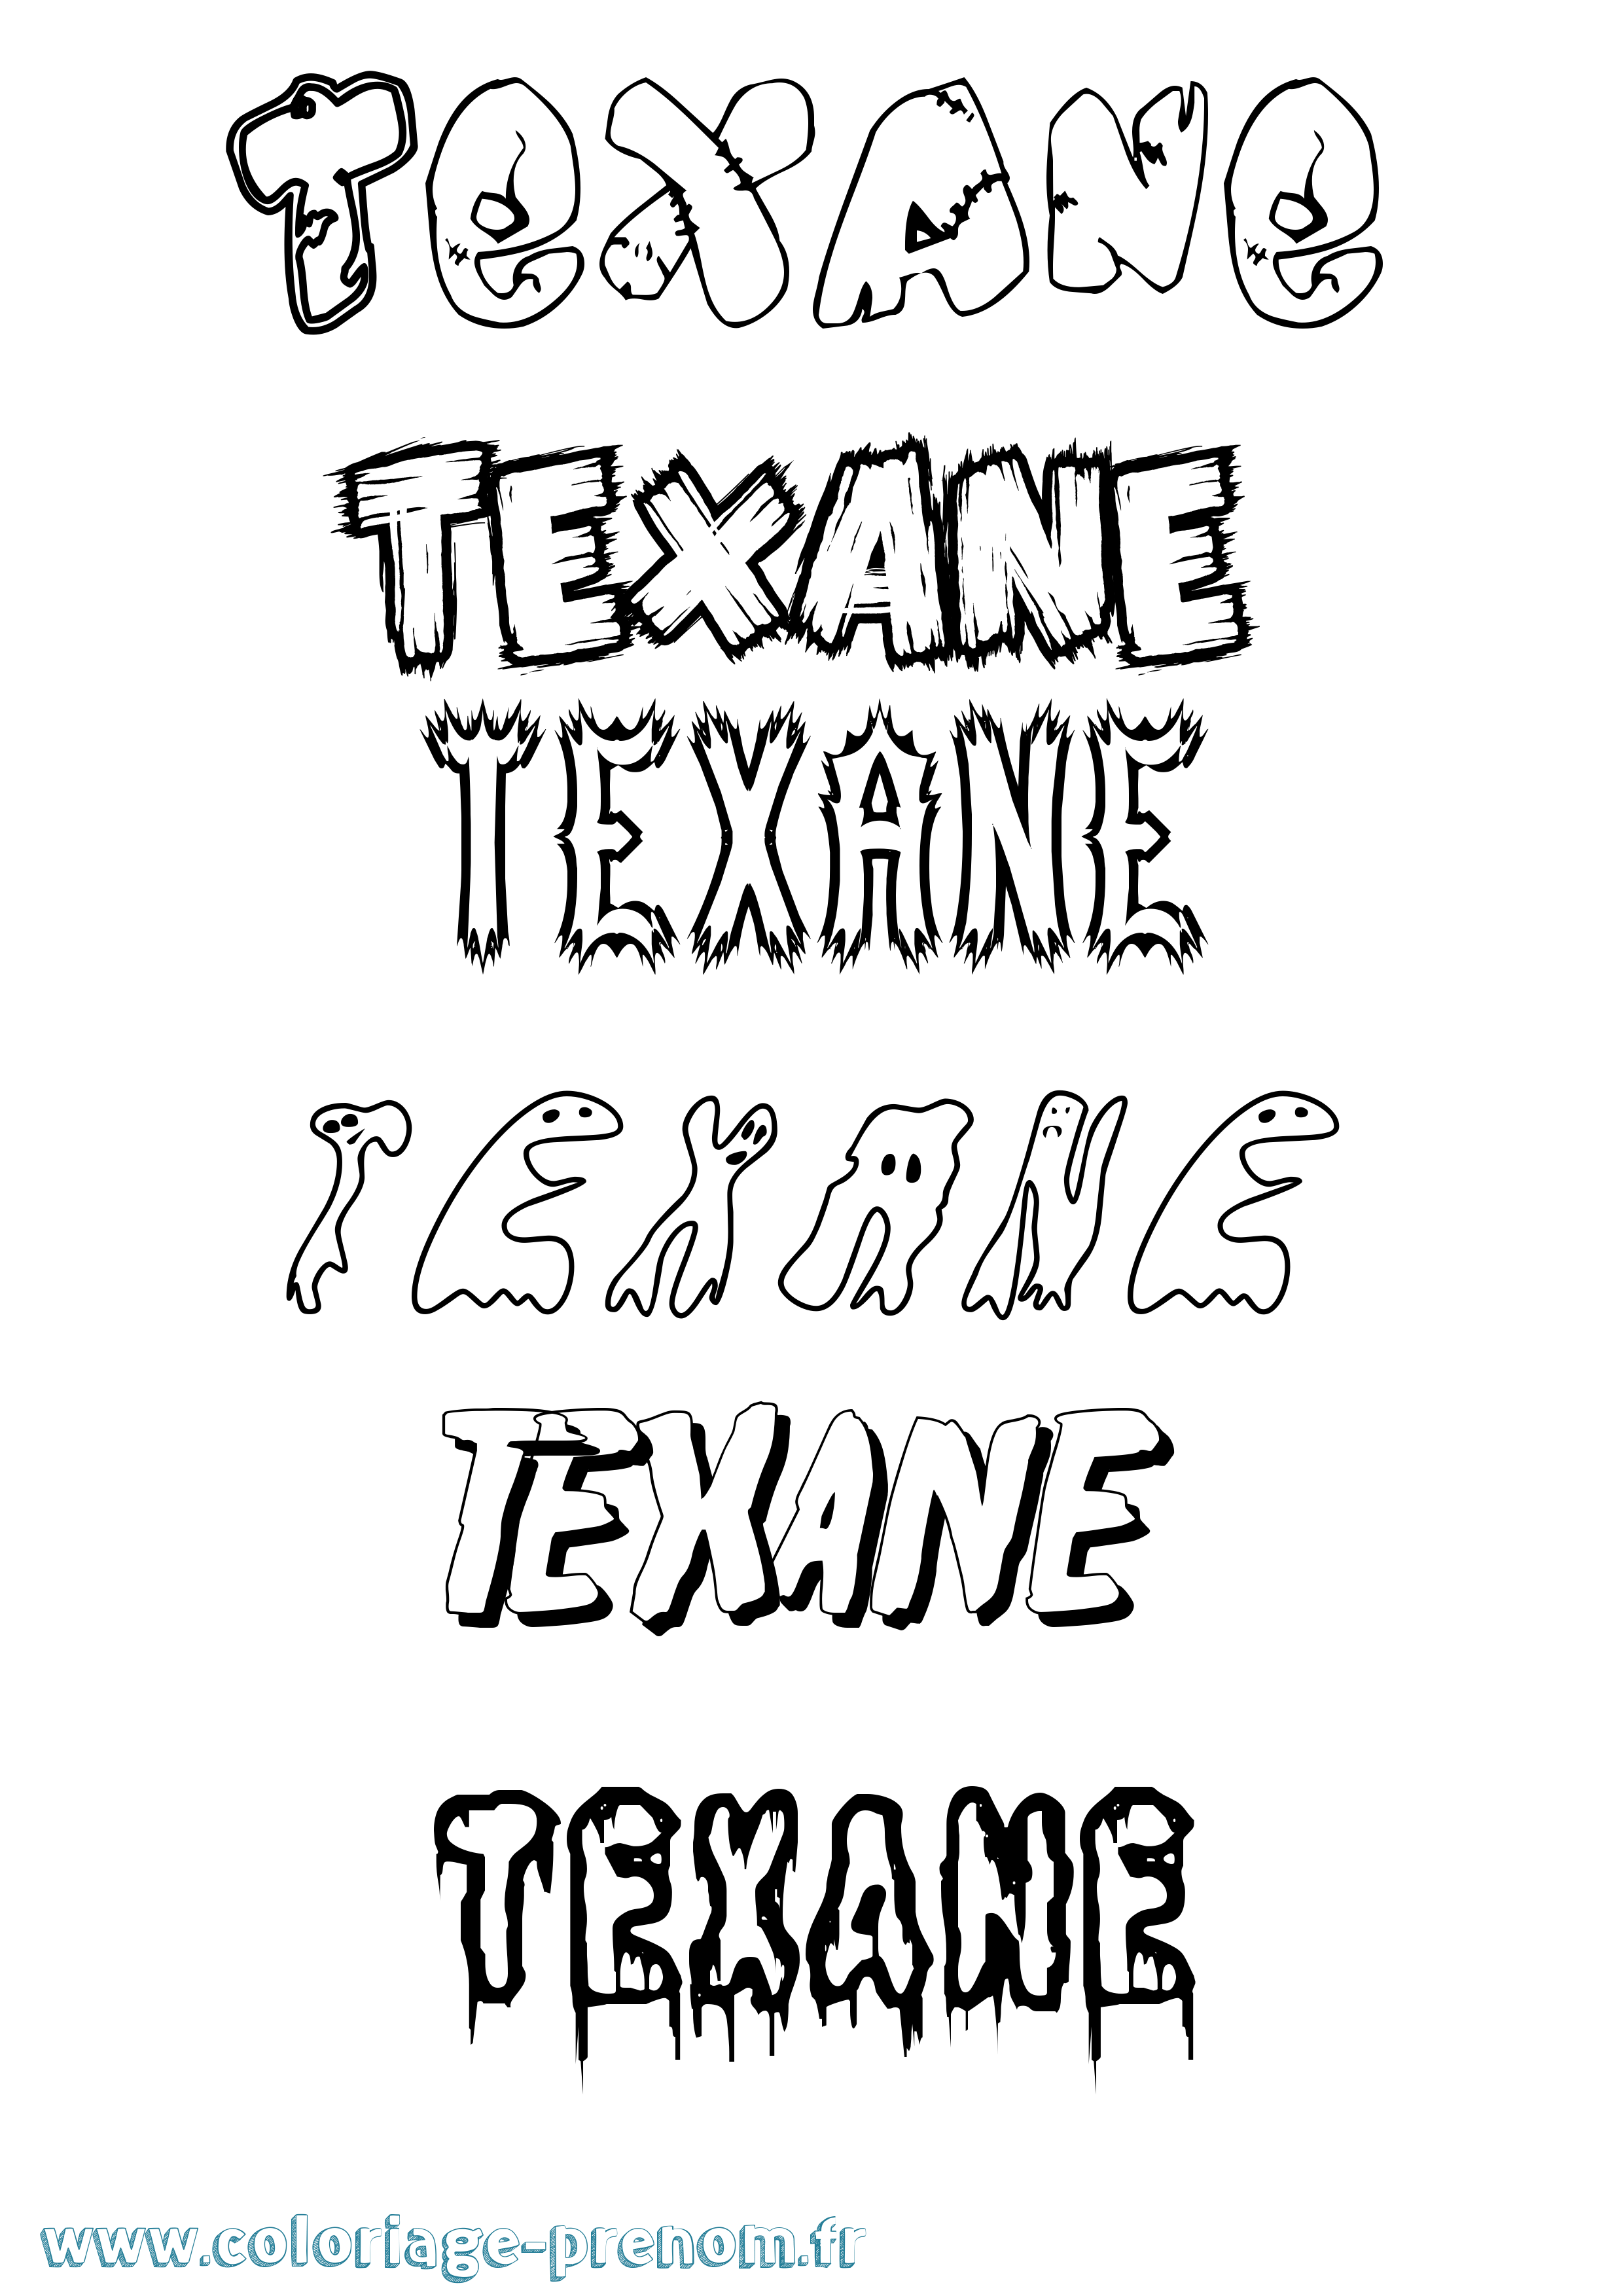 Coloriage prénom Texane Frisson